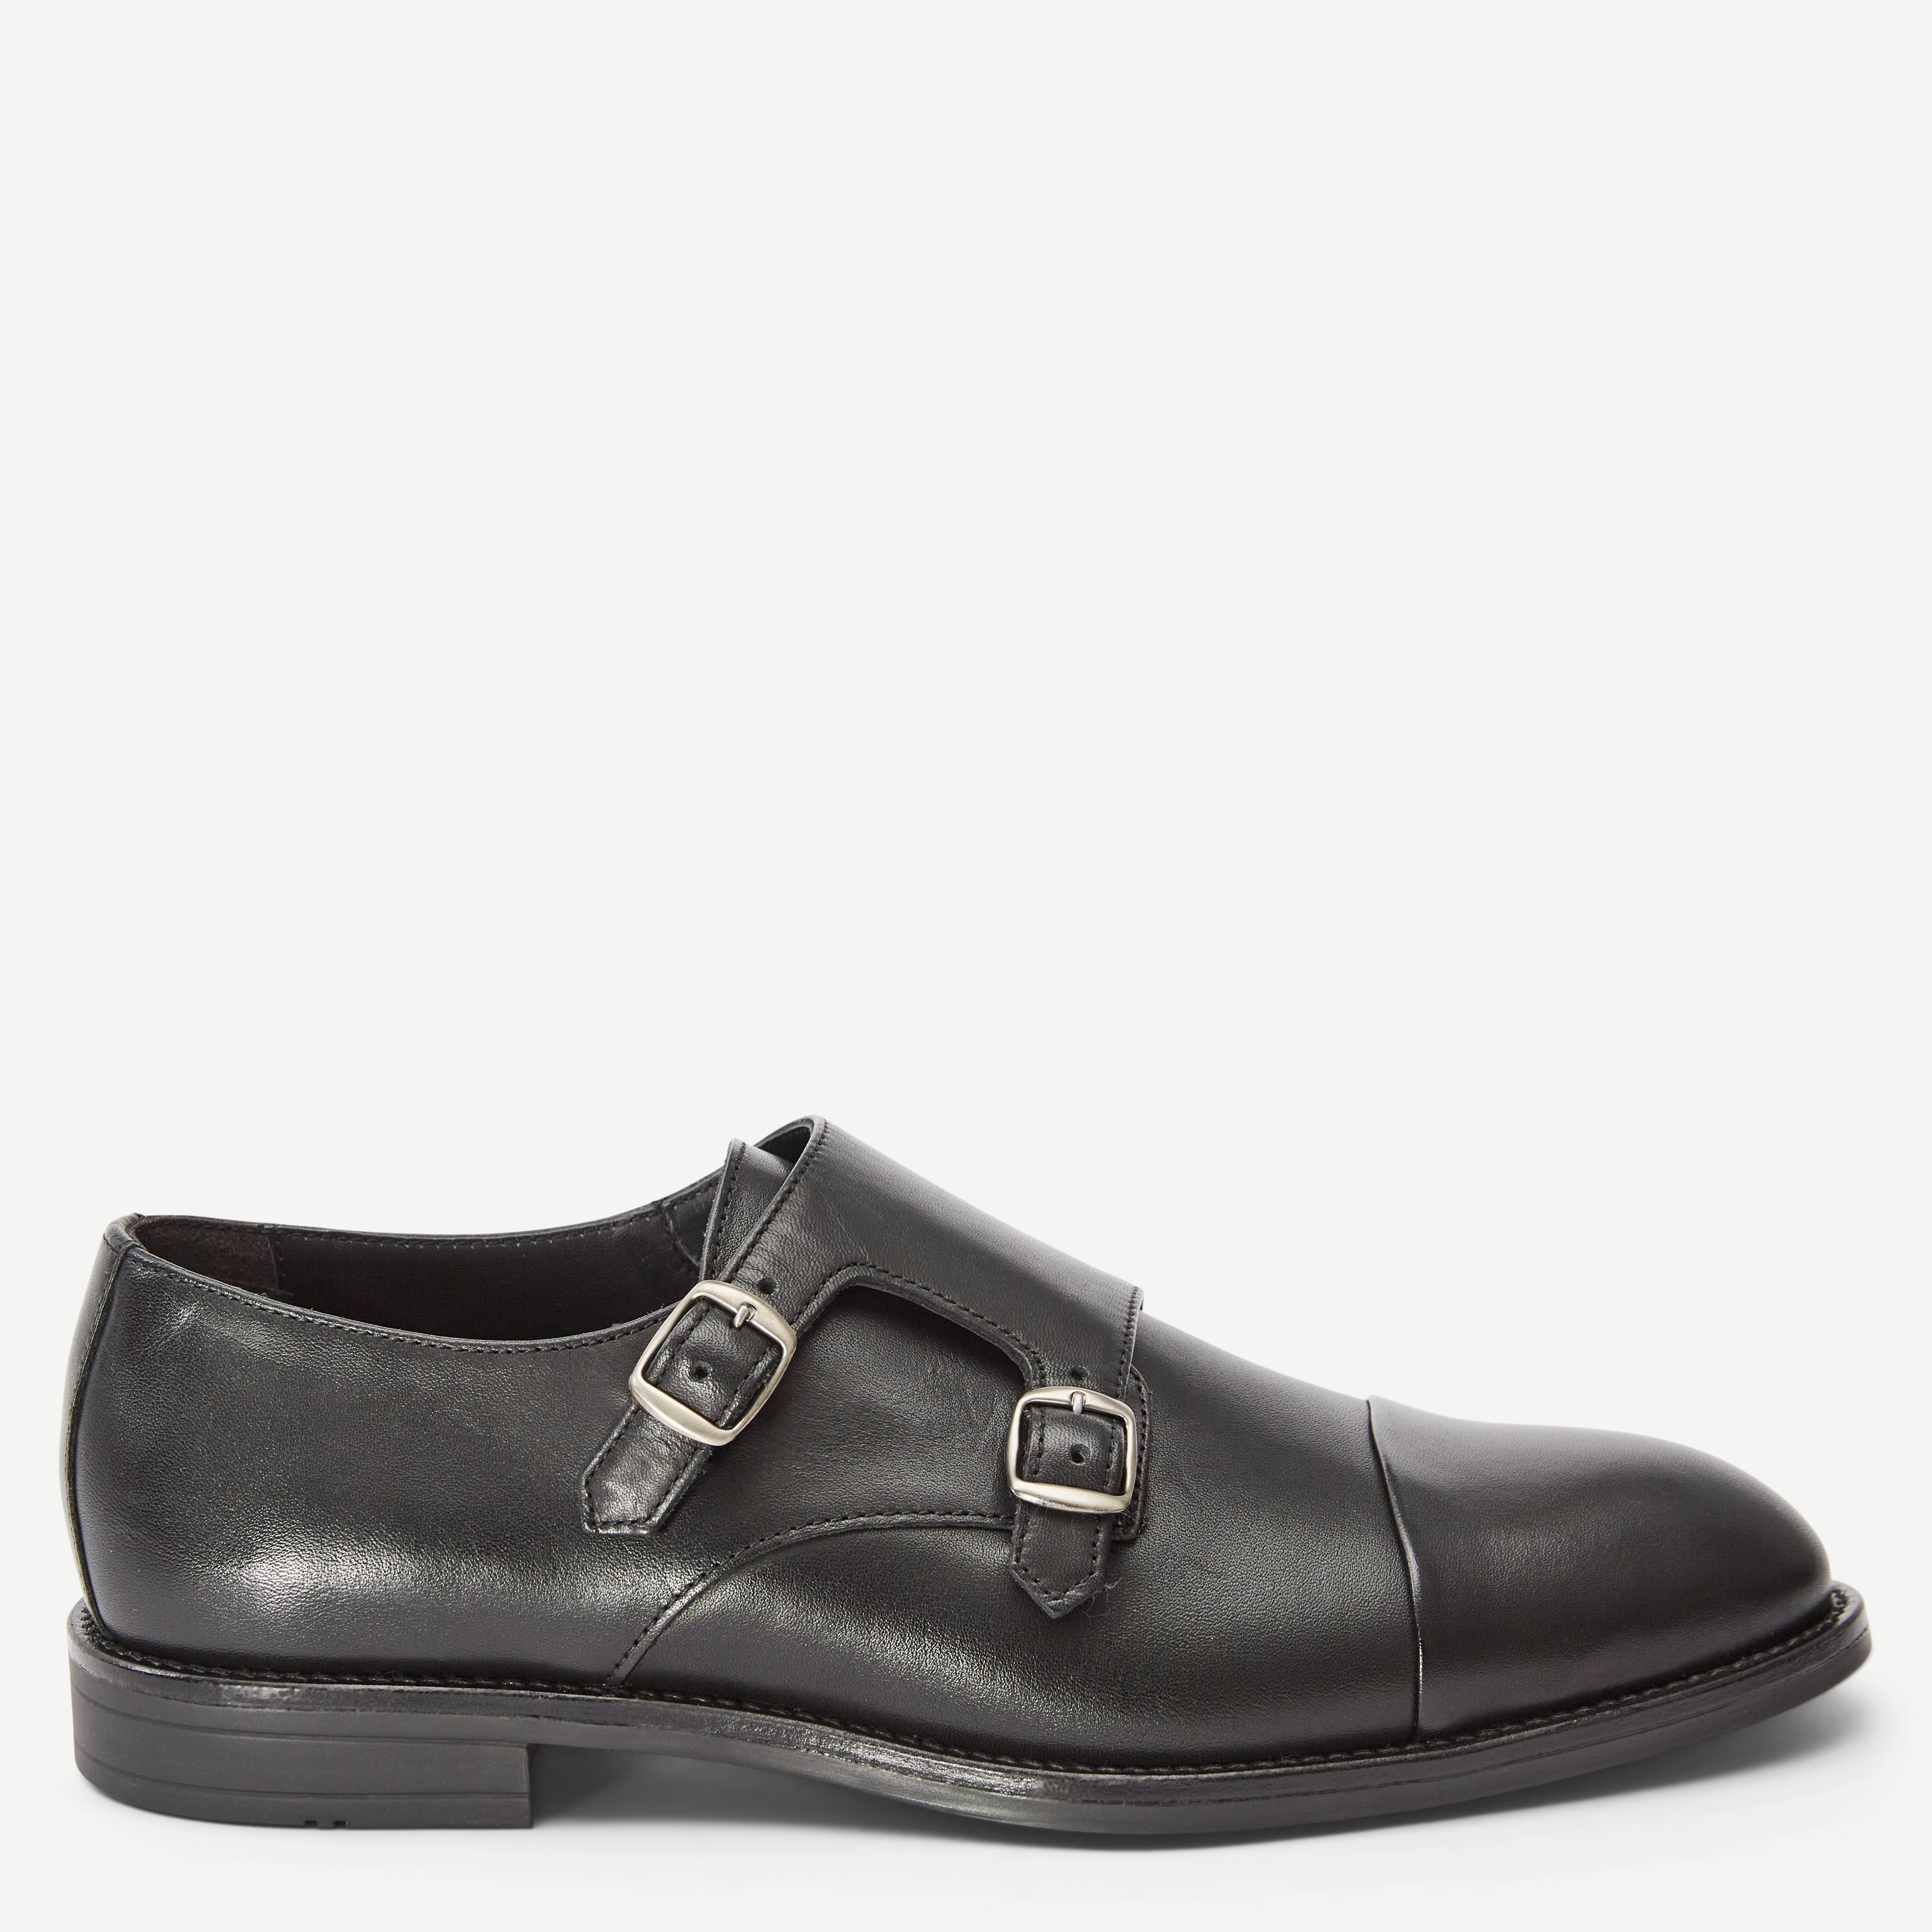 Ahler Shoes 98900 Black